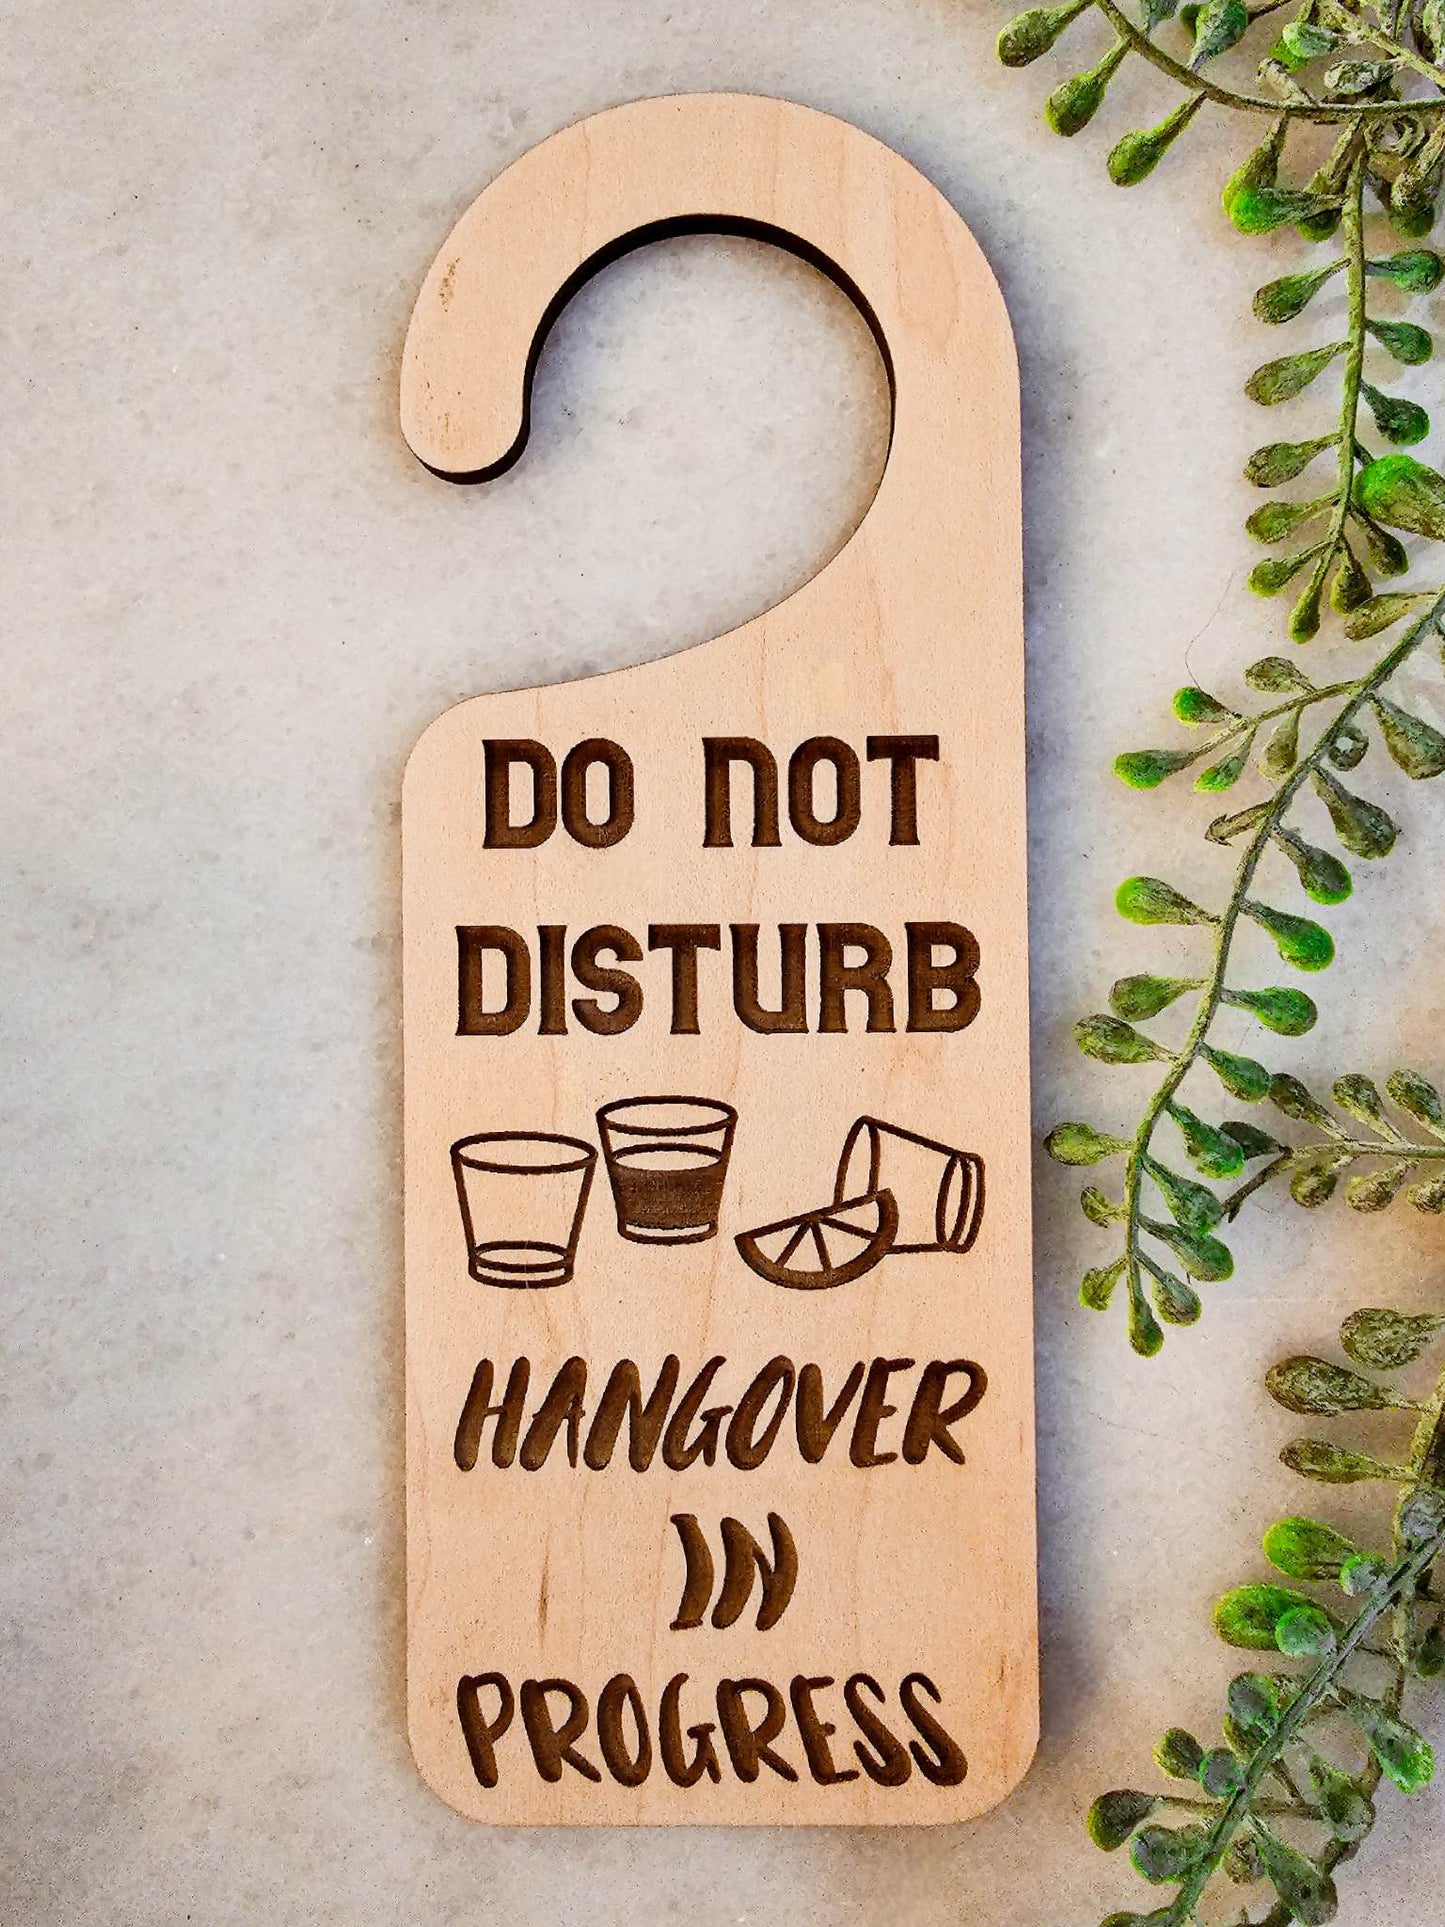 Do Not Disturb Door Knob Hanger Sign- Hangover In Progress